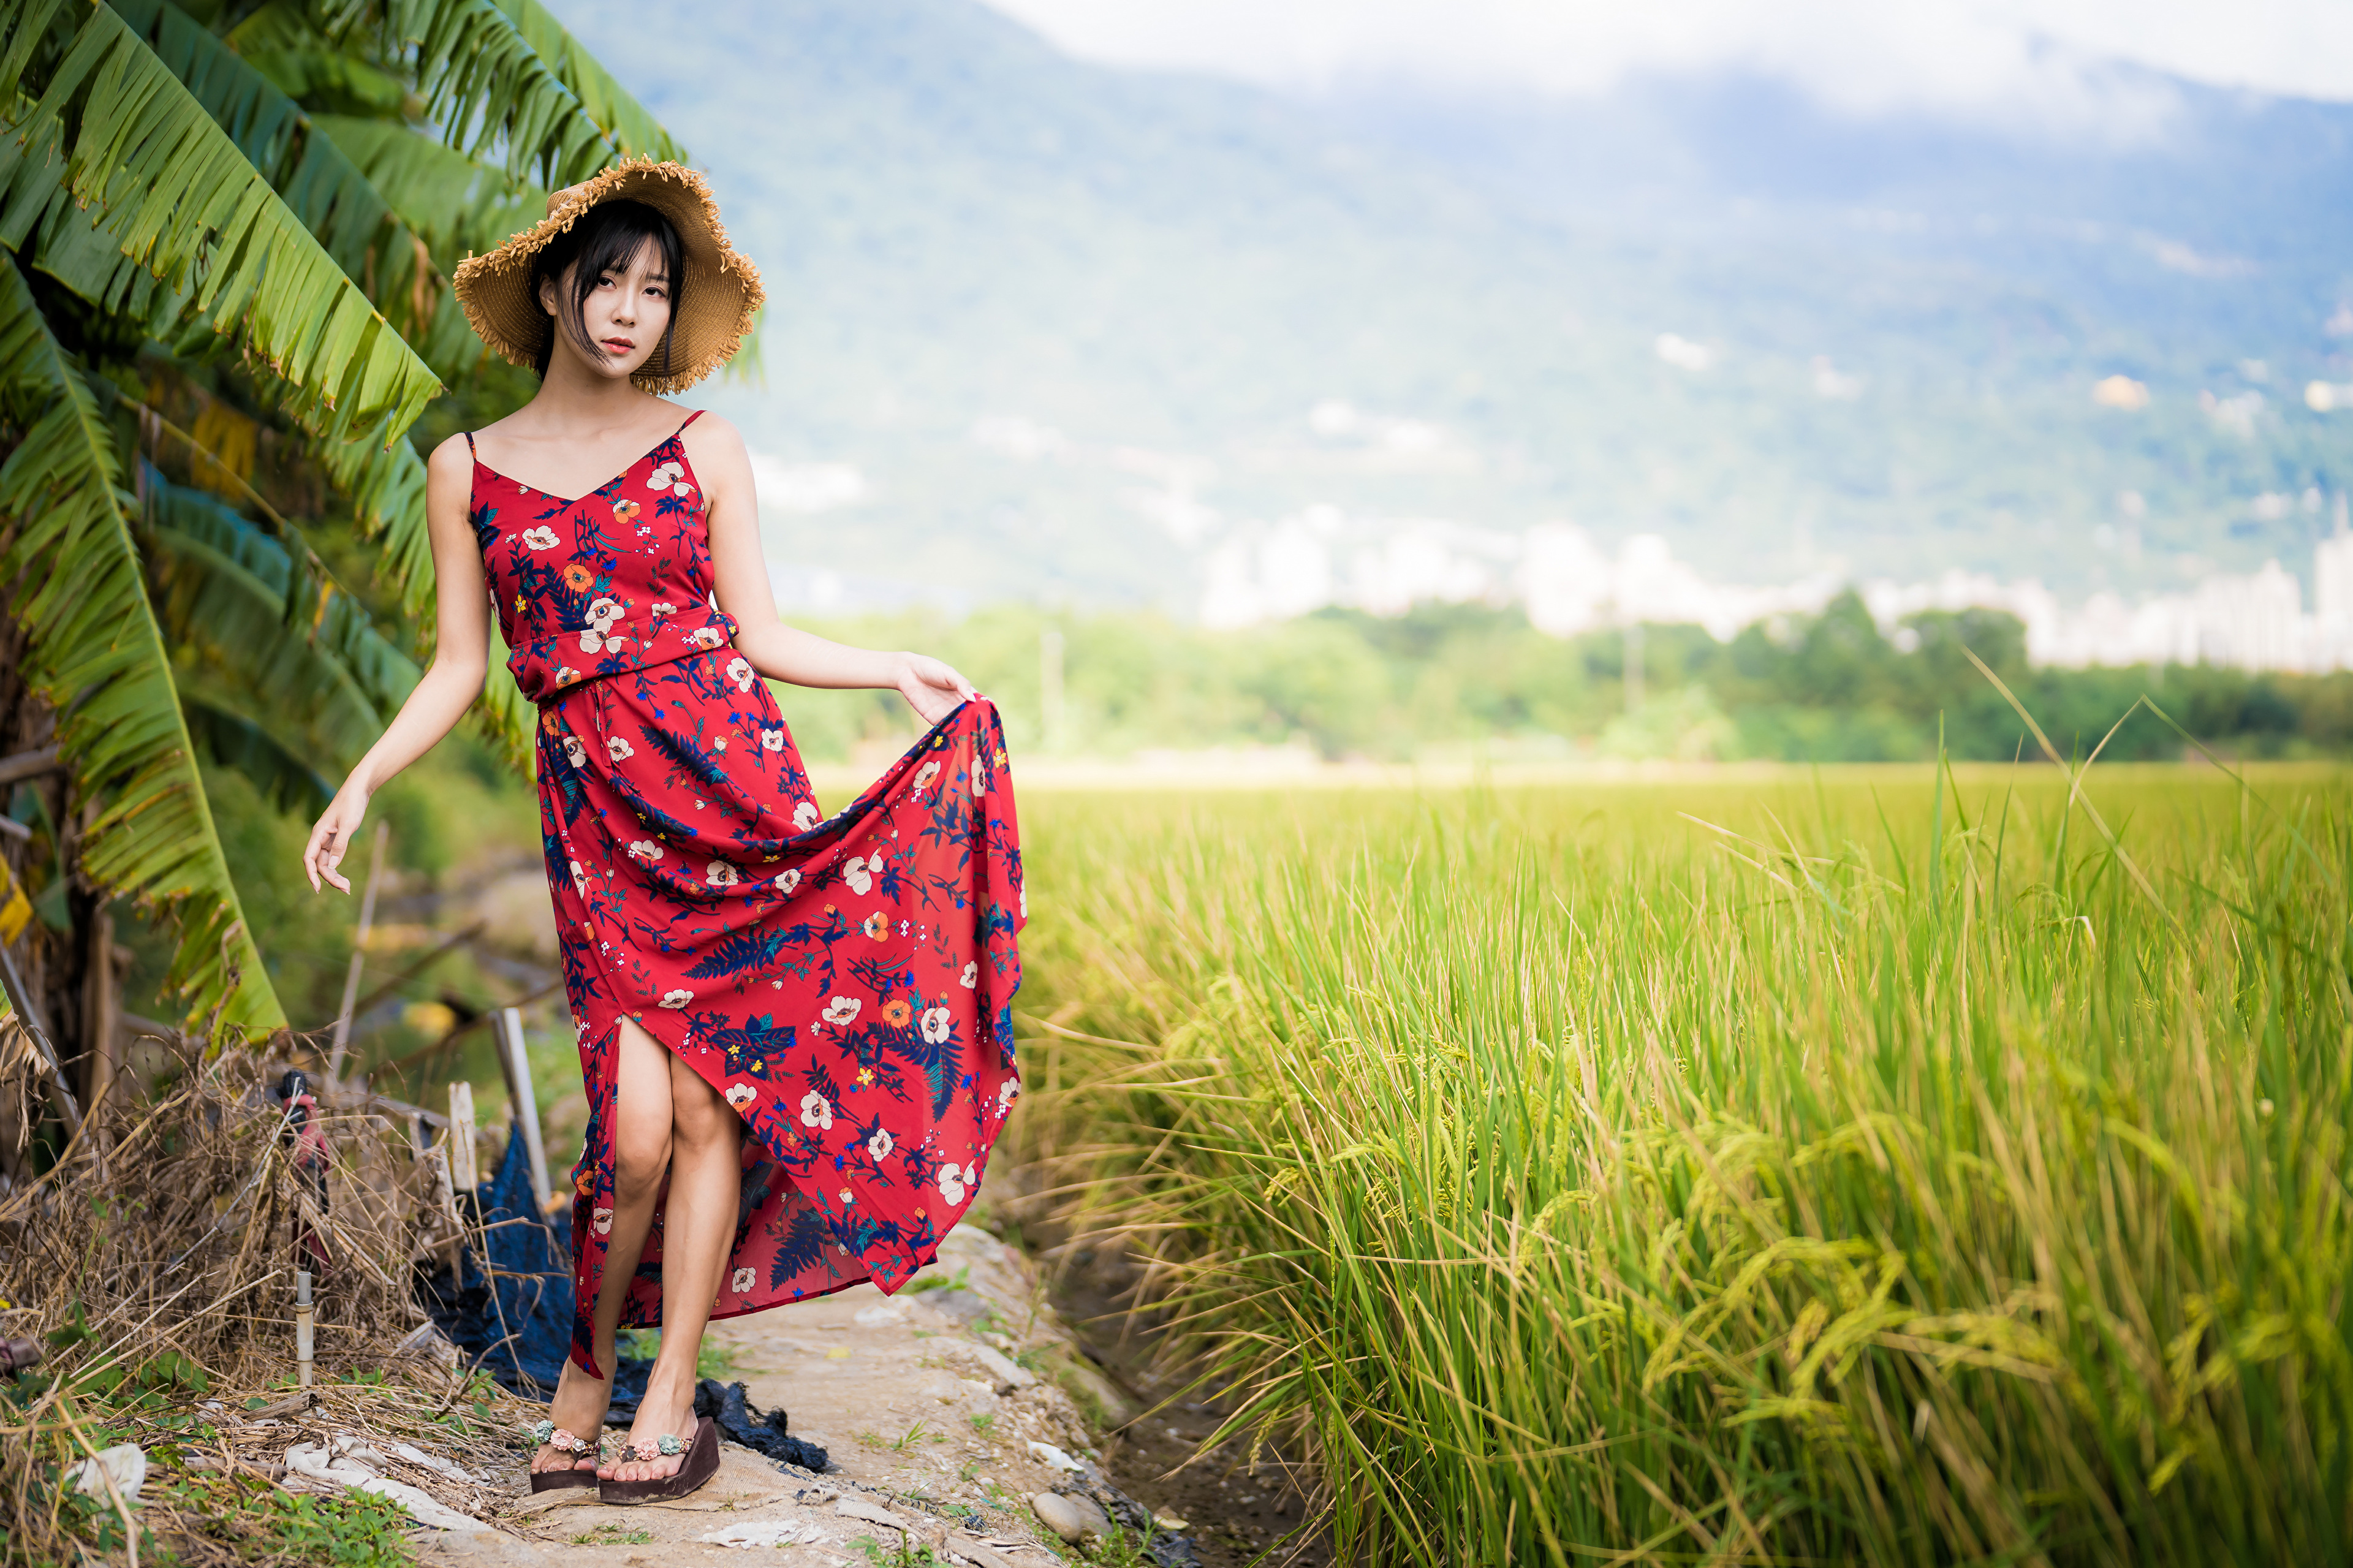 Asian Women Model Flip Flops Barefoot Flower Dress Straw Hat Field Trees Palm Trees 3840x2559